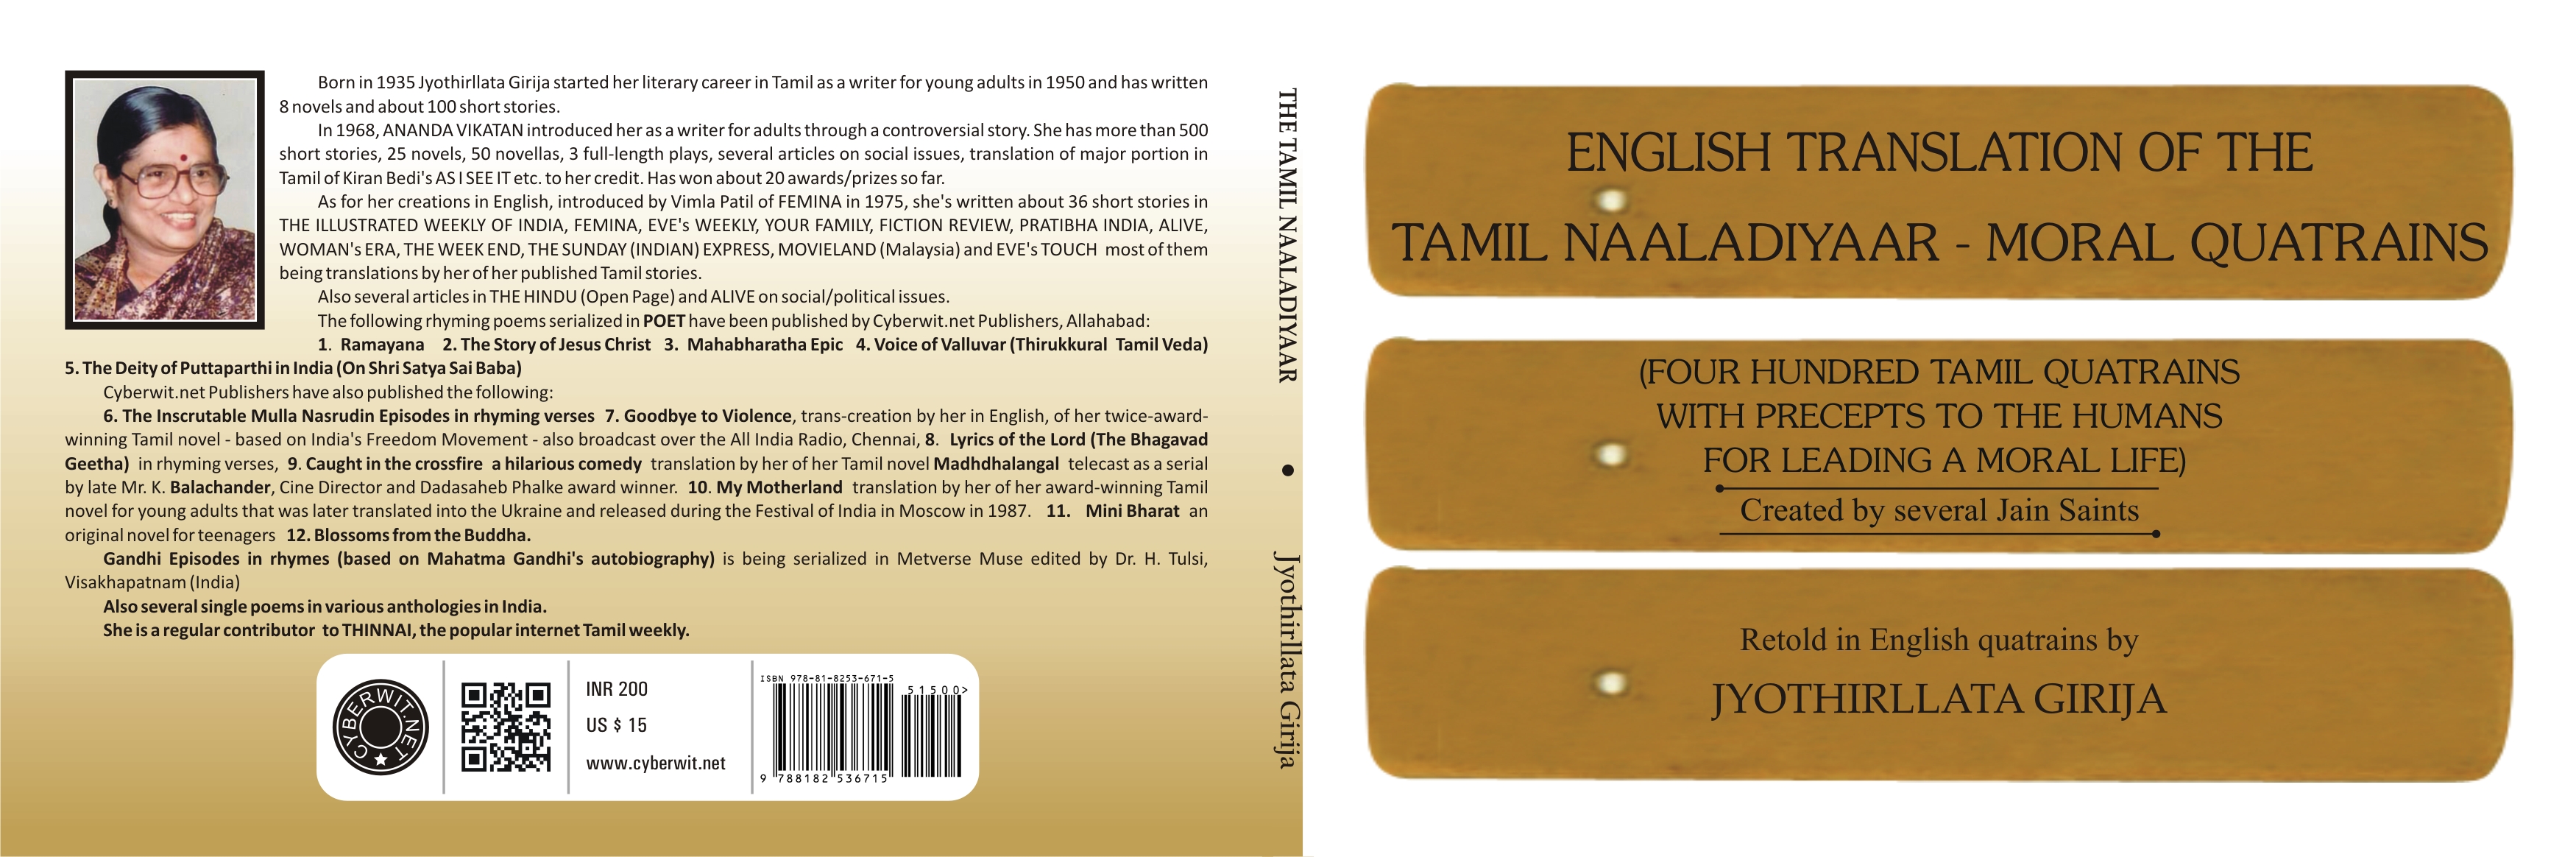 English translation of Tamil Naaladiyaar